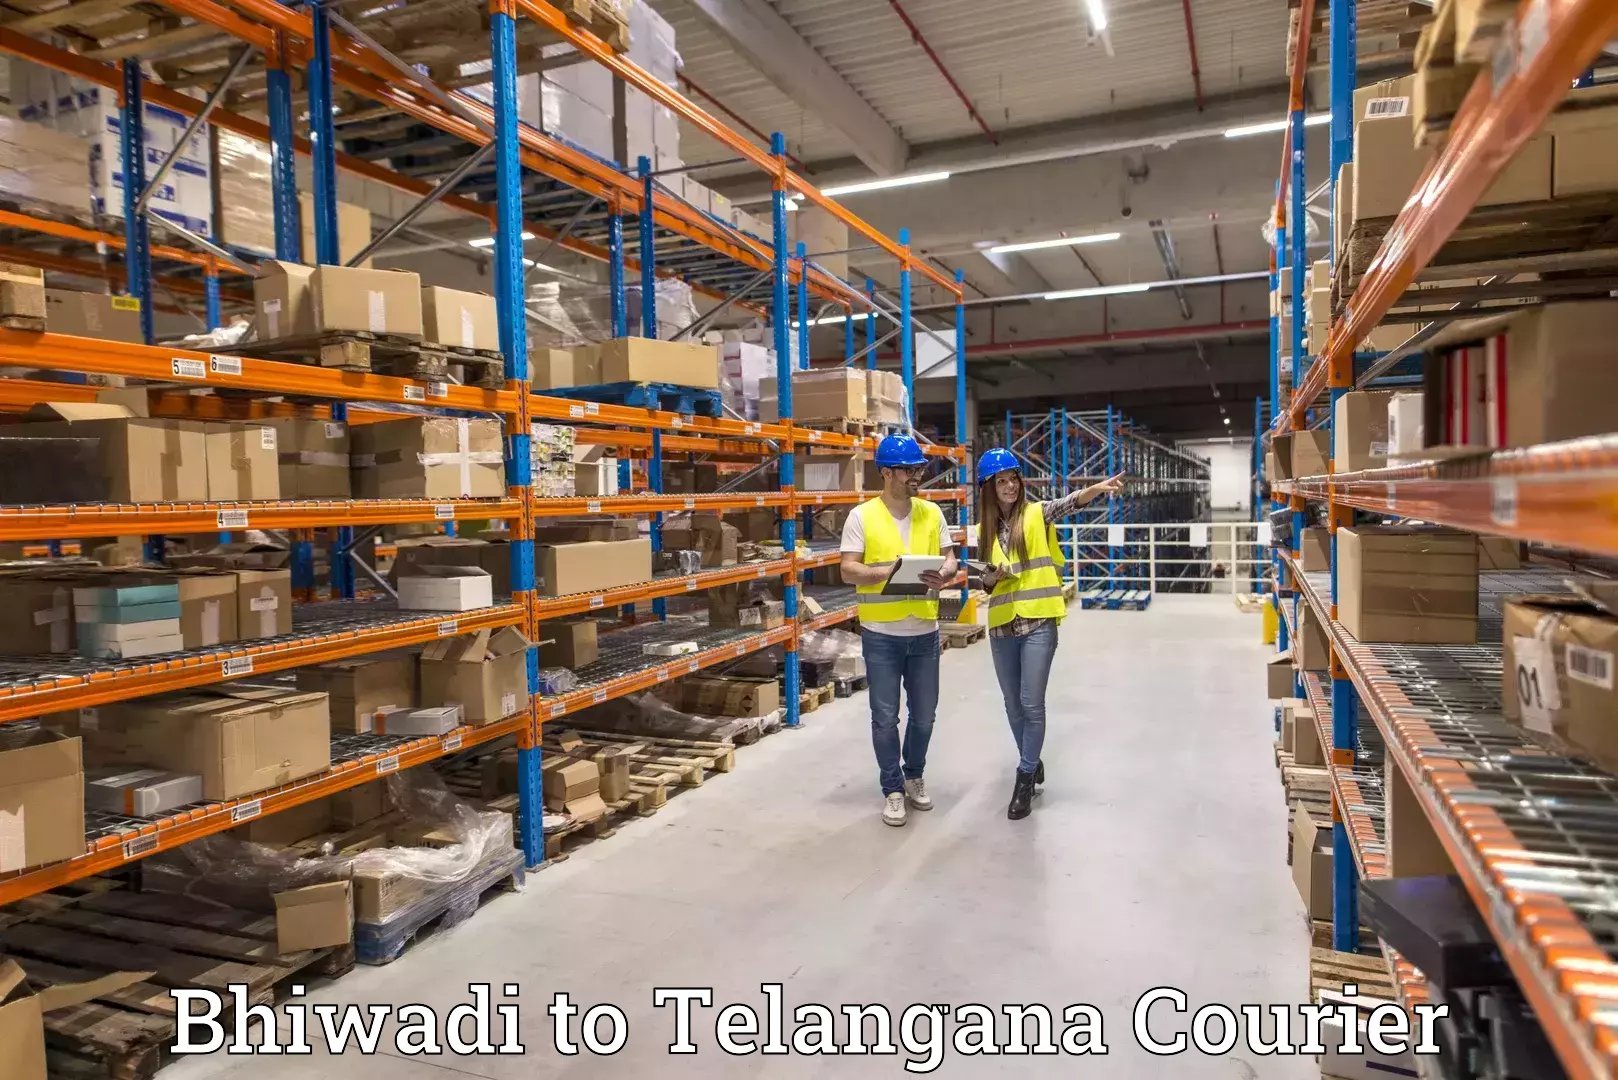 Efficient logistics management in Bhiwadi to Amangal